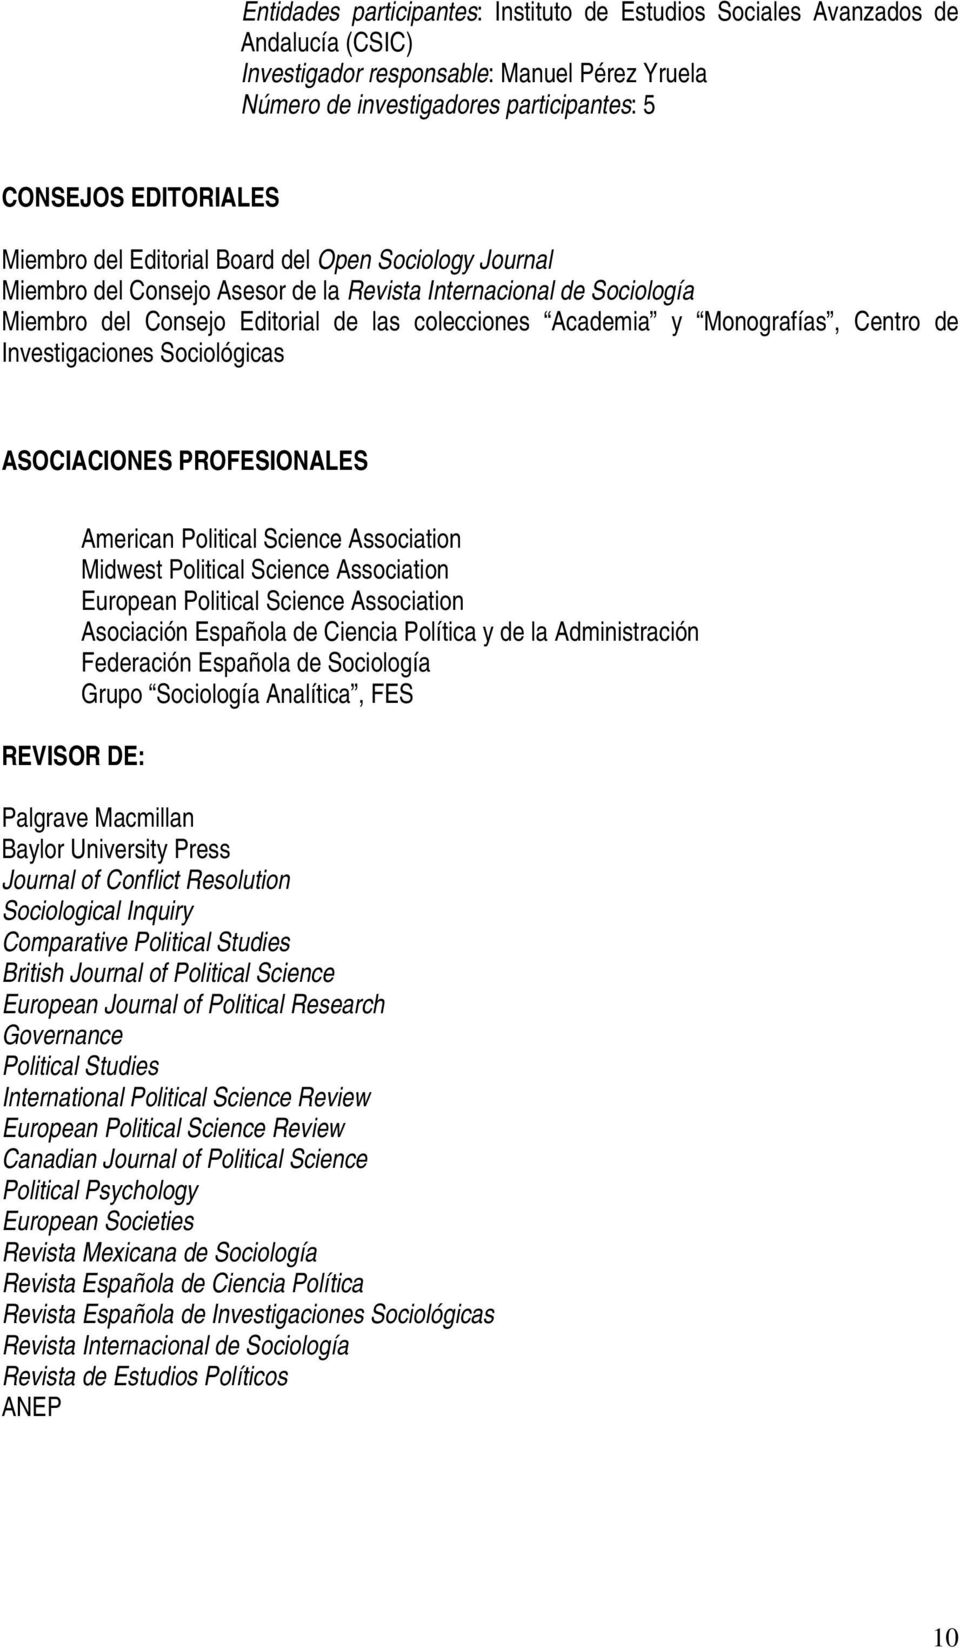 Centro de Investigaciones Sociológicas ASOCIACIONES PROFESIONALES REVISOR DE: American Political Science Association Midwest Political Science Association European Political Science Association